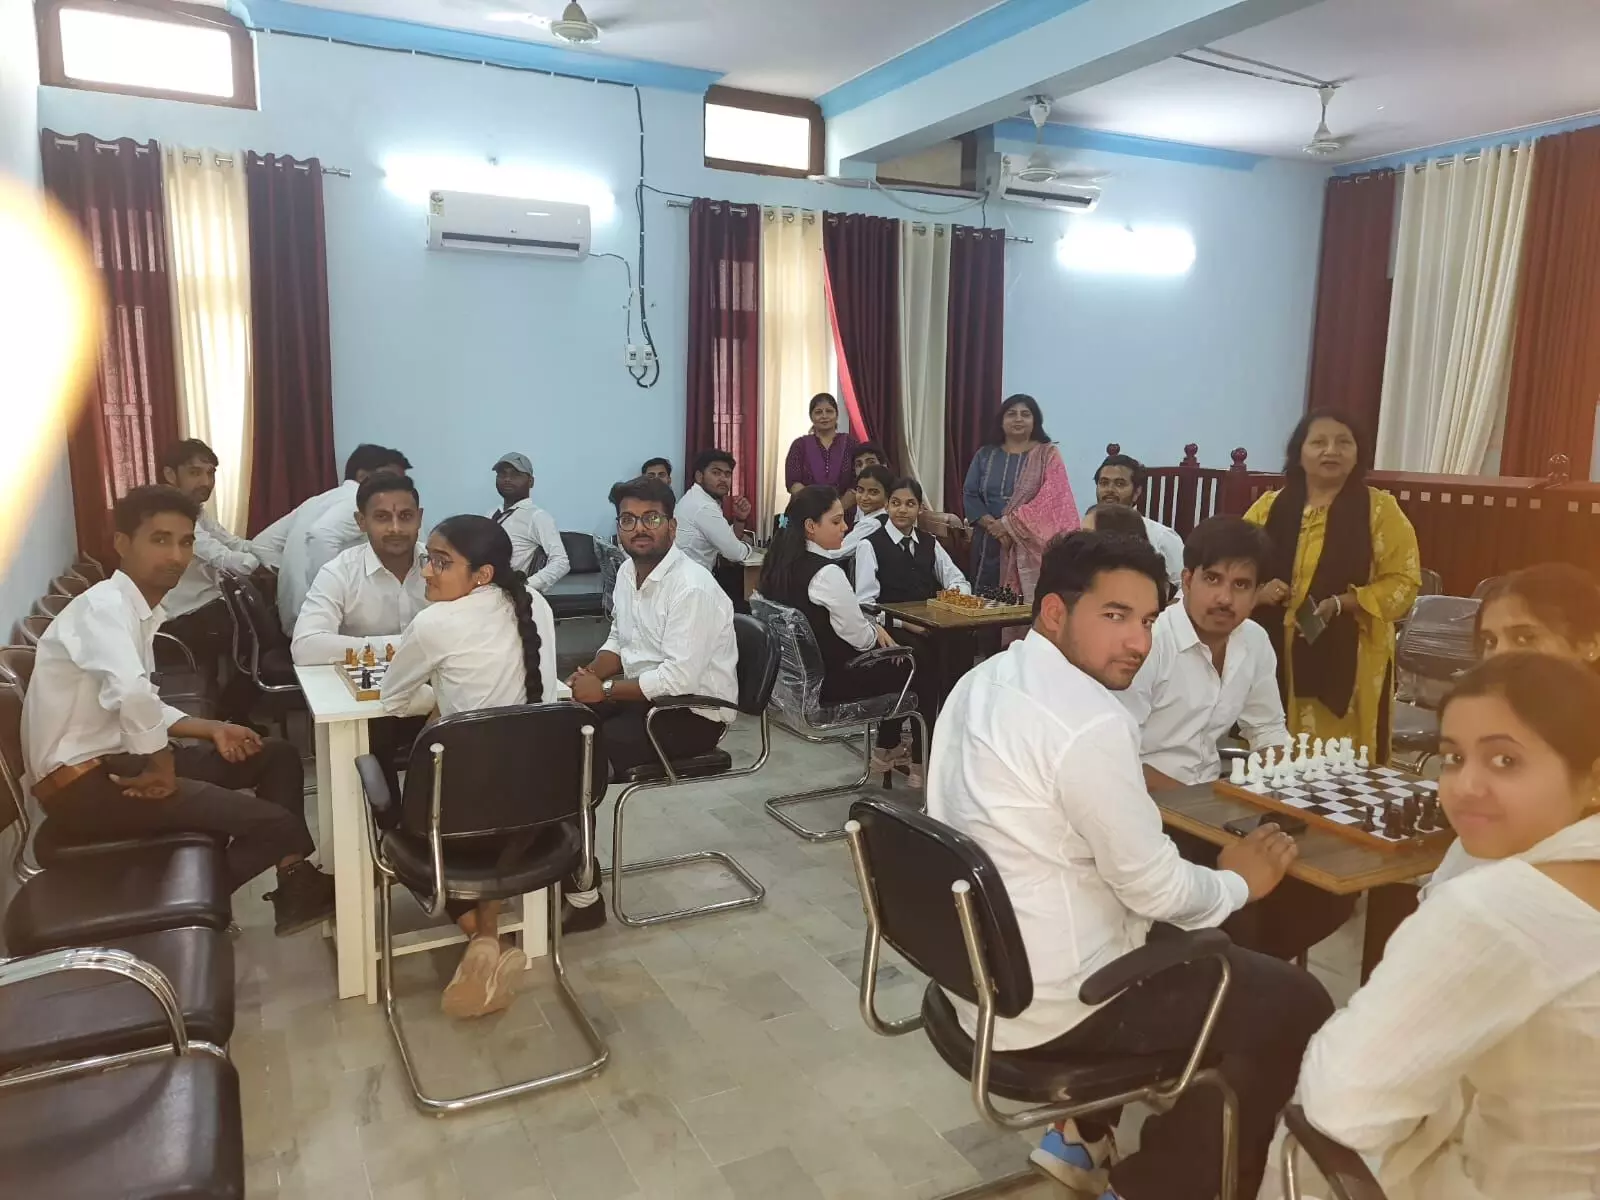 एस. डी. कॉलेज ऑफ़ लॉ में दो दिवसीय शतरंज प्रतियोगिता का शुभारम्भ